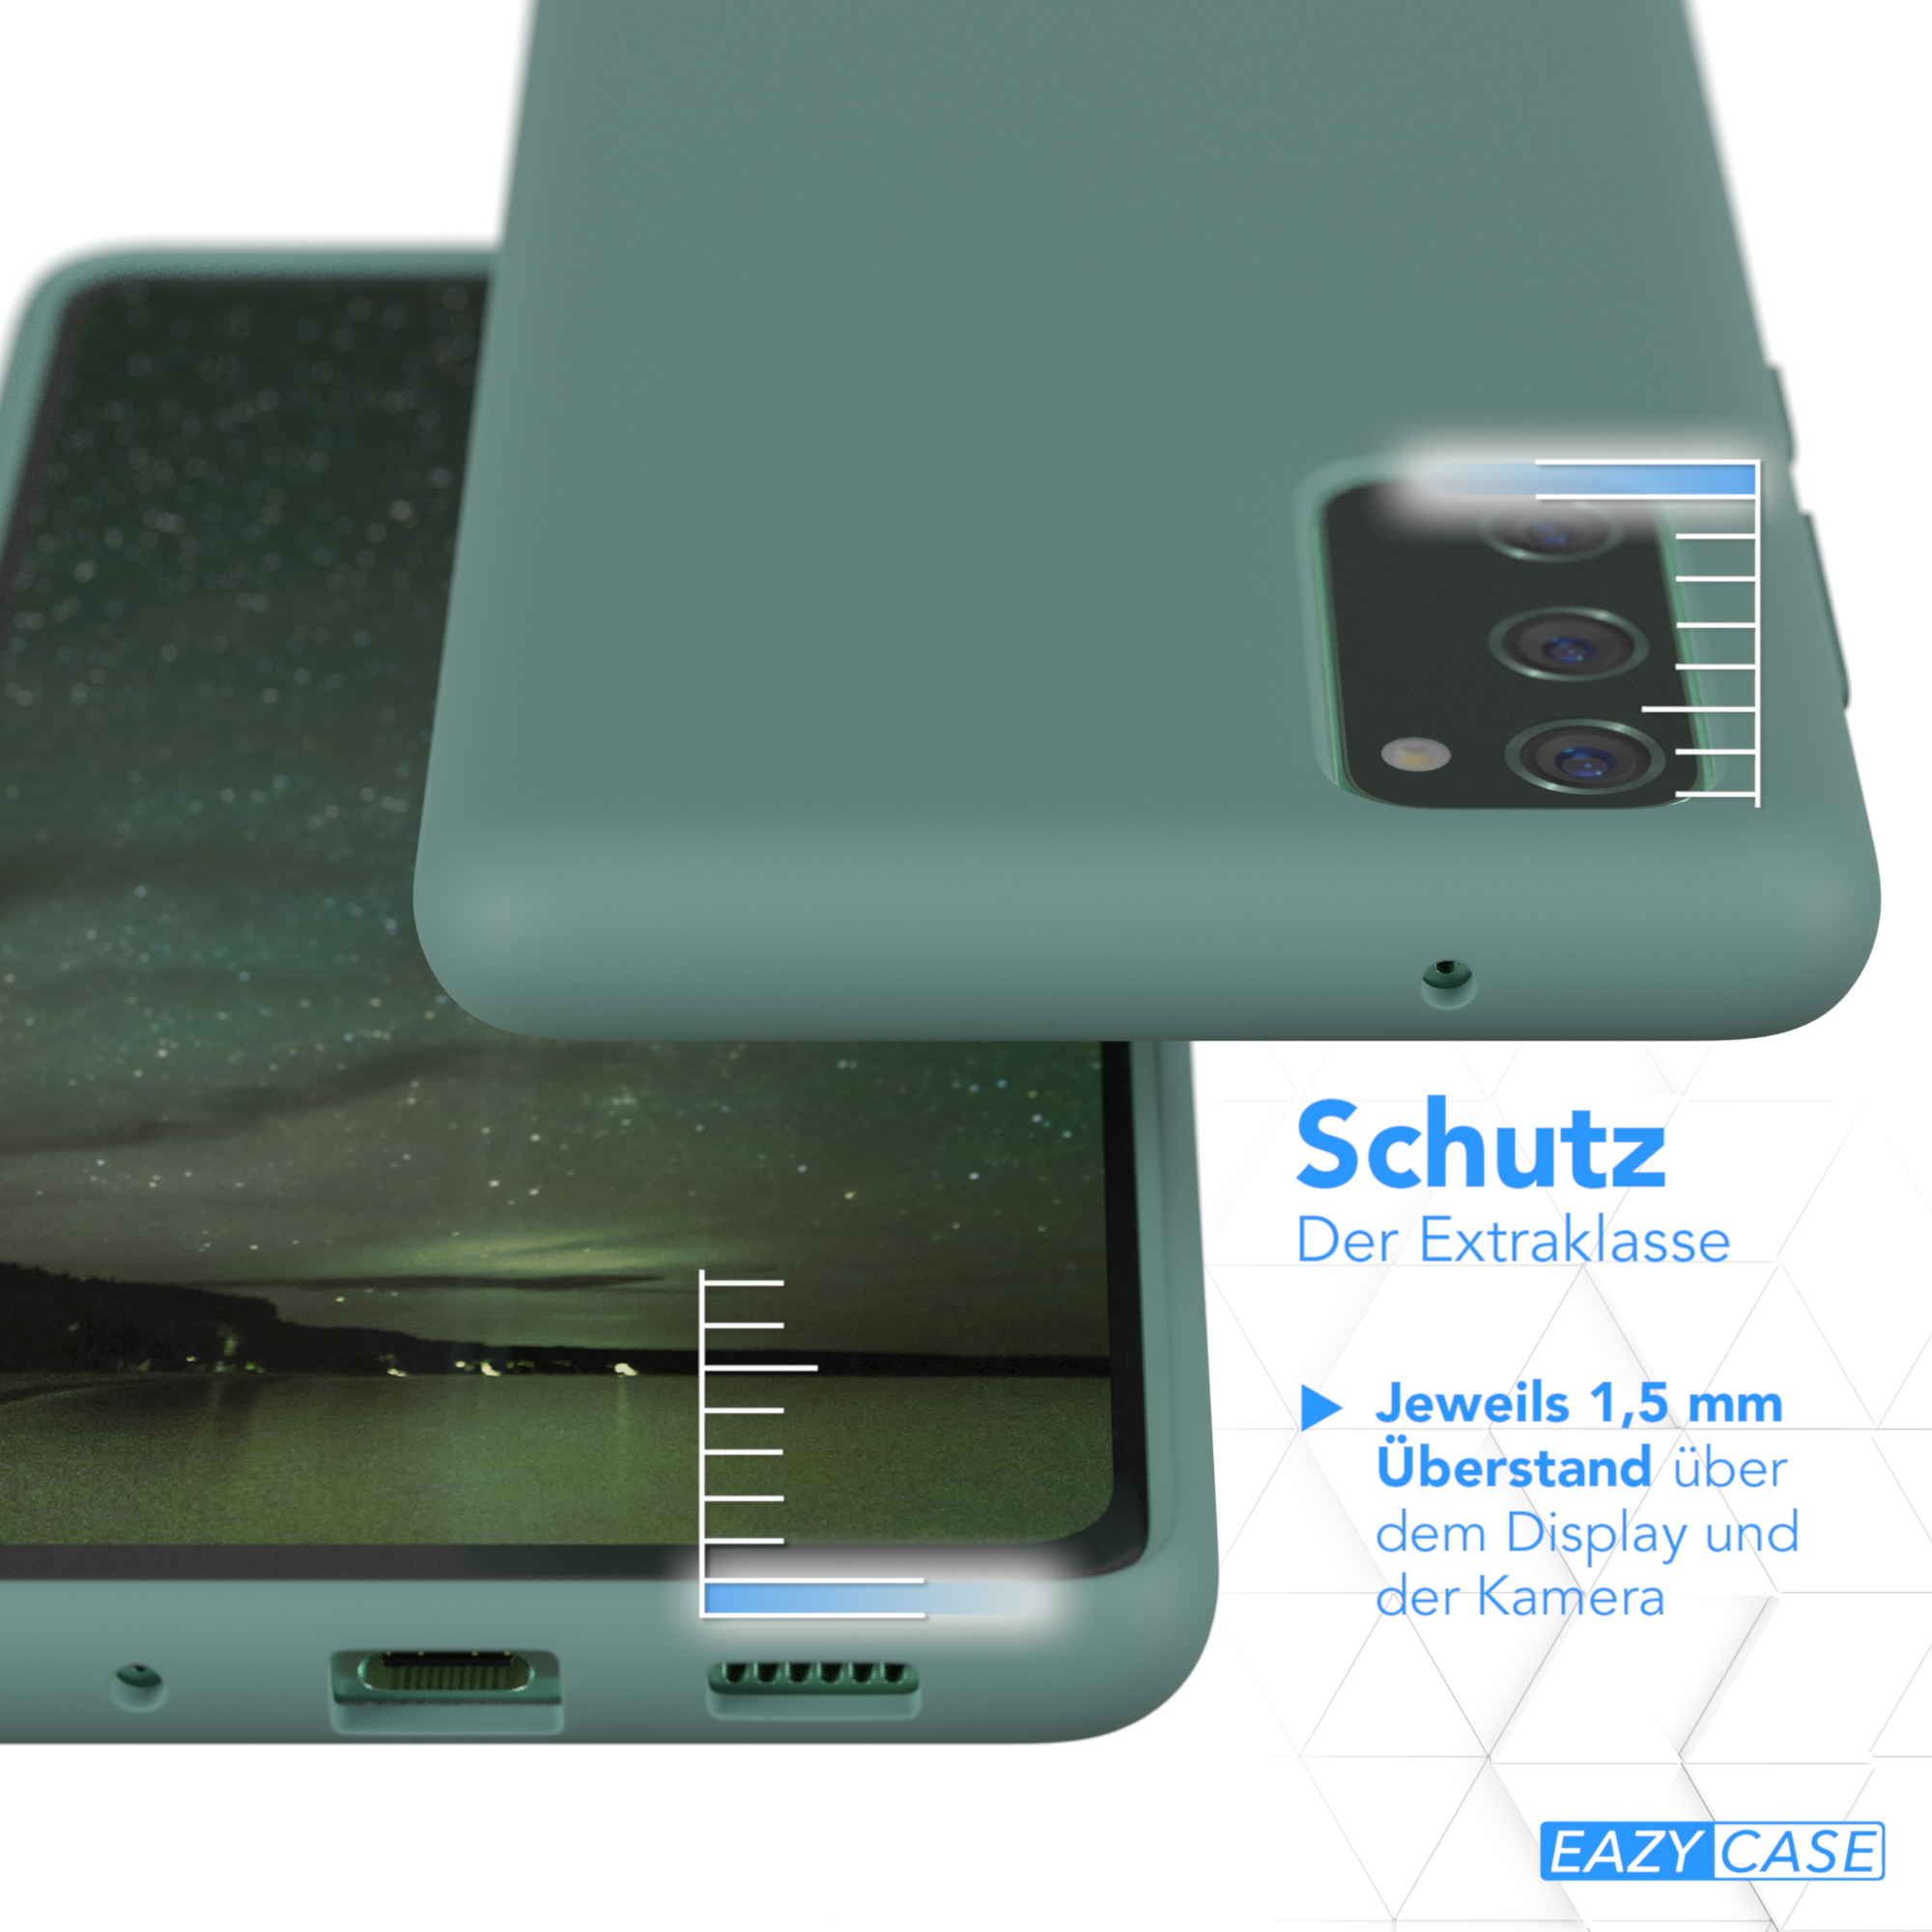 S20 FE Galaxy Samsung, Handycase, / Backcover, Grün / Nachtgrün FE 5G, Premium EAZY Silikon CASE S20